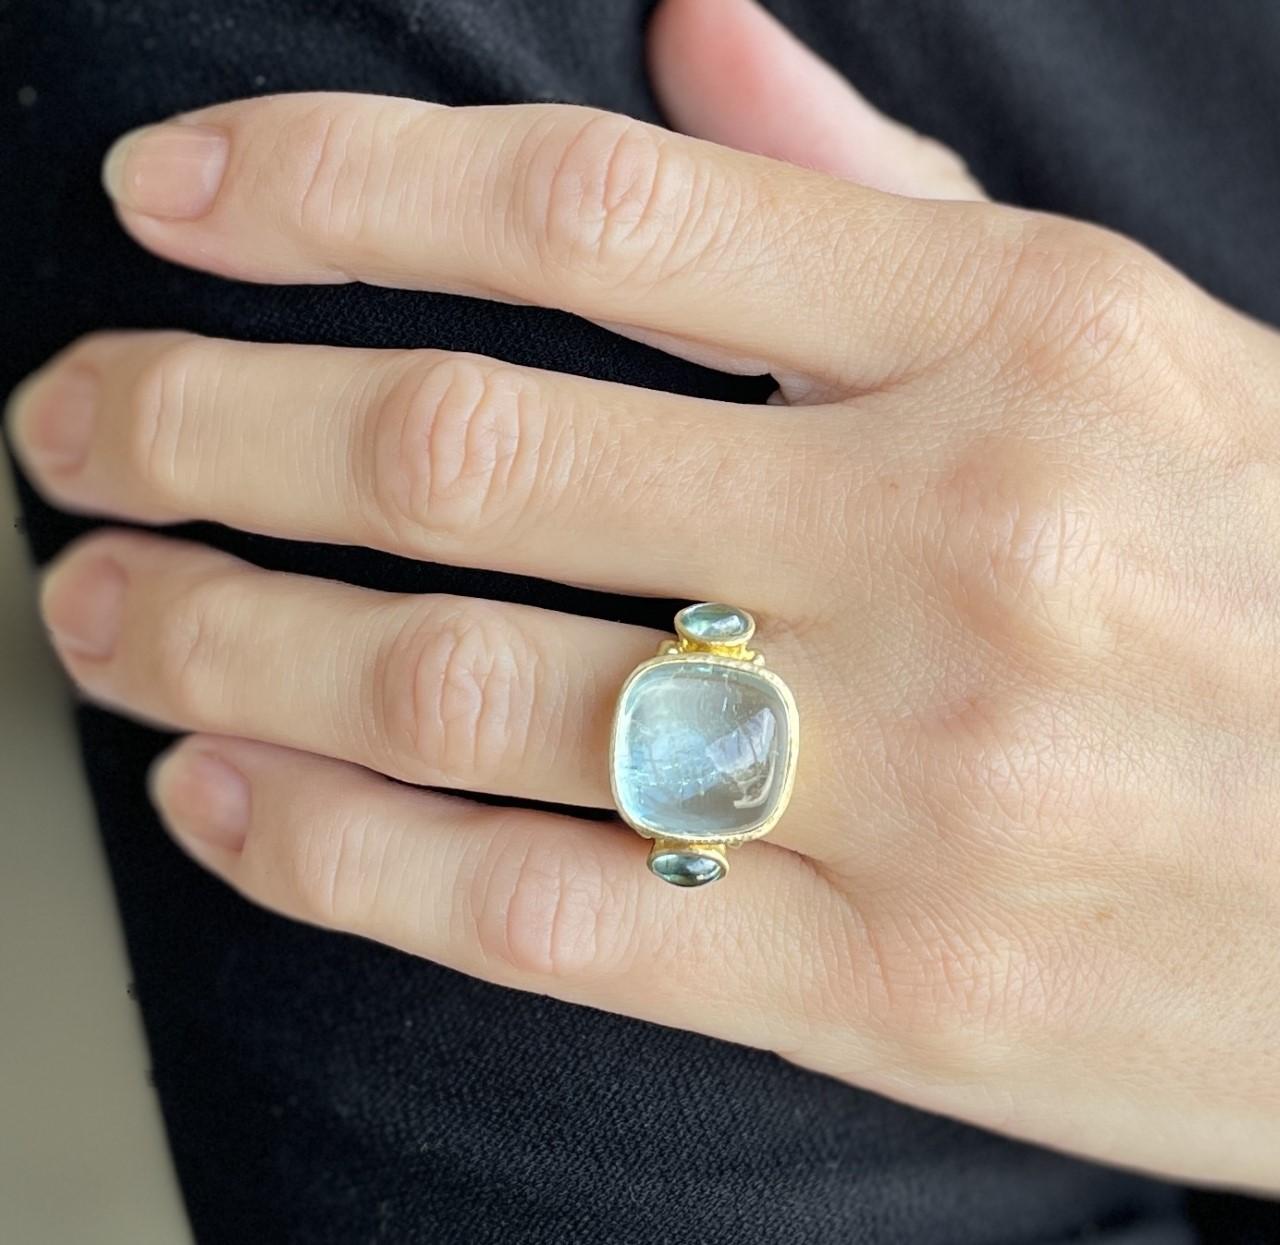 Elizabeth Locke Ring
19KY Gold
Three Stone Ring with Cabochon Cut Aquamarines